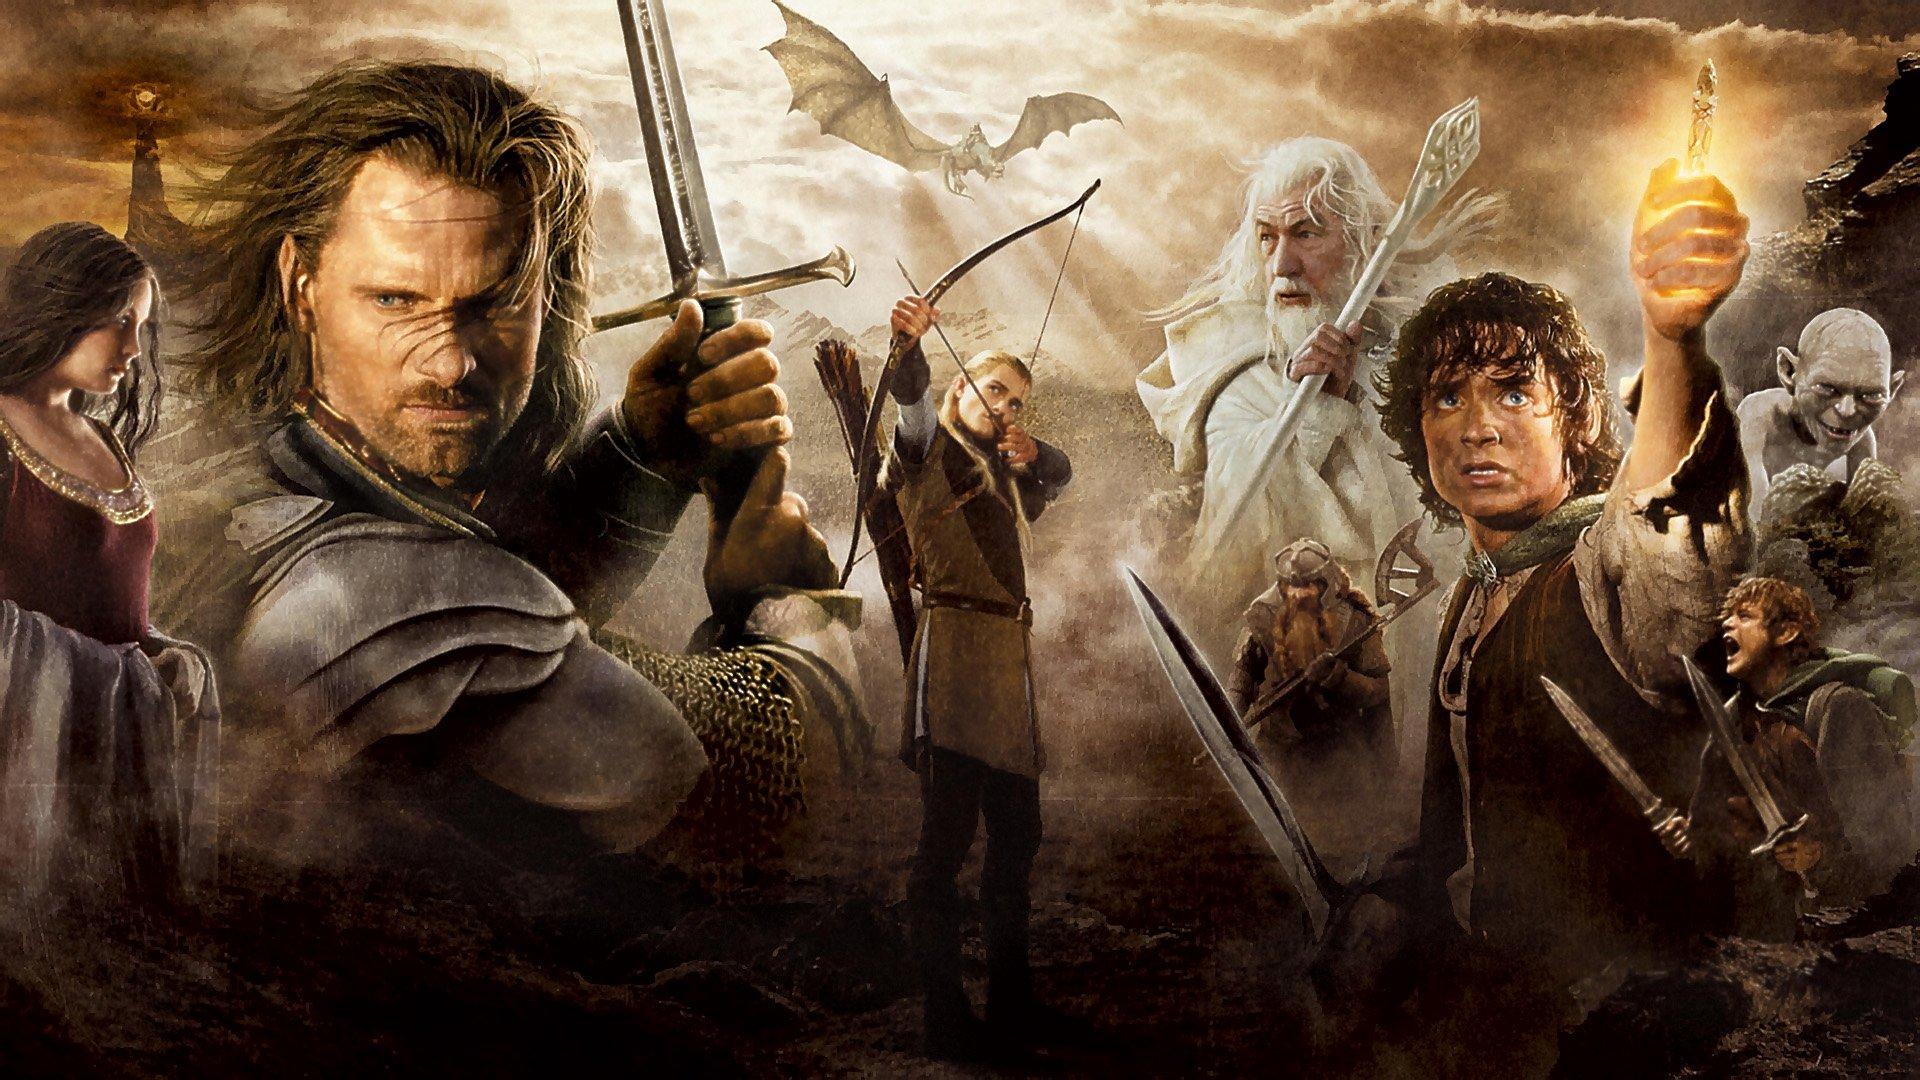 Le Retour du roi : pourquoi le combat entre Aragorn et Sauron a été supprimé ?